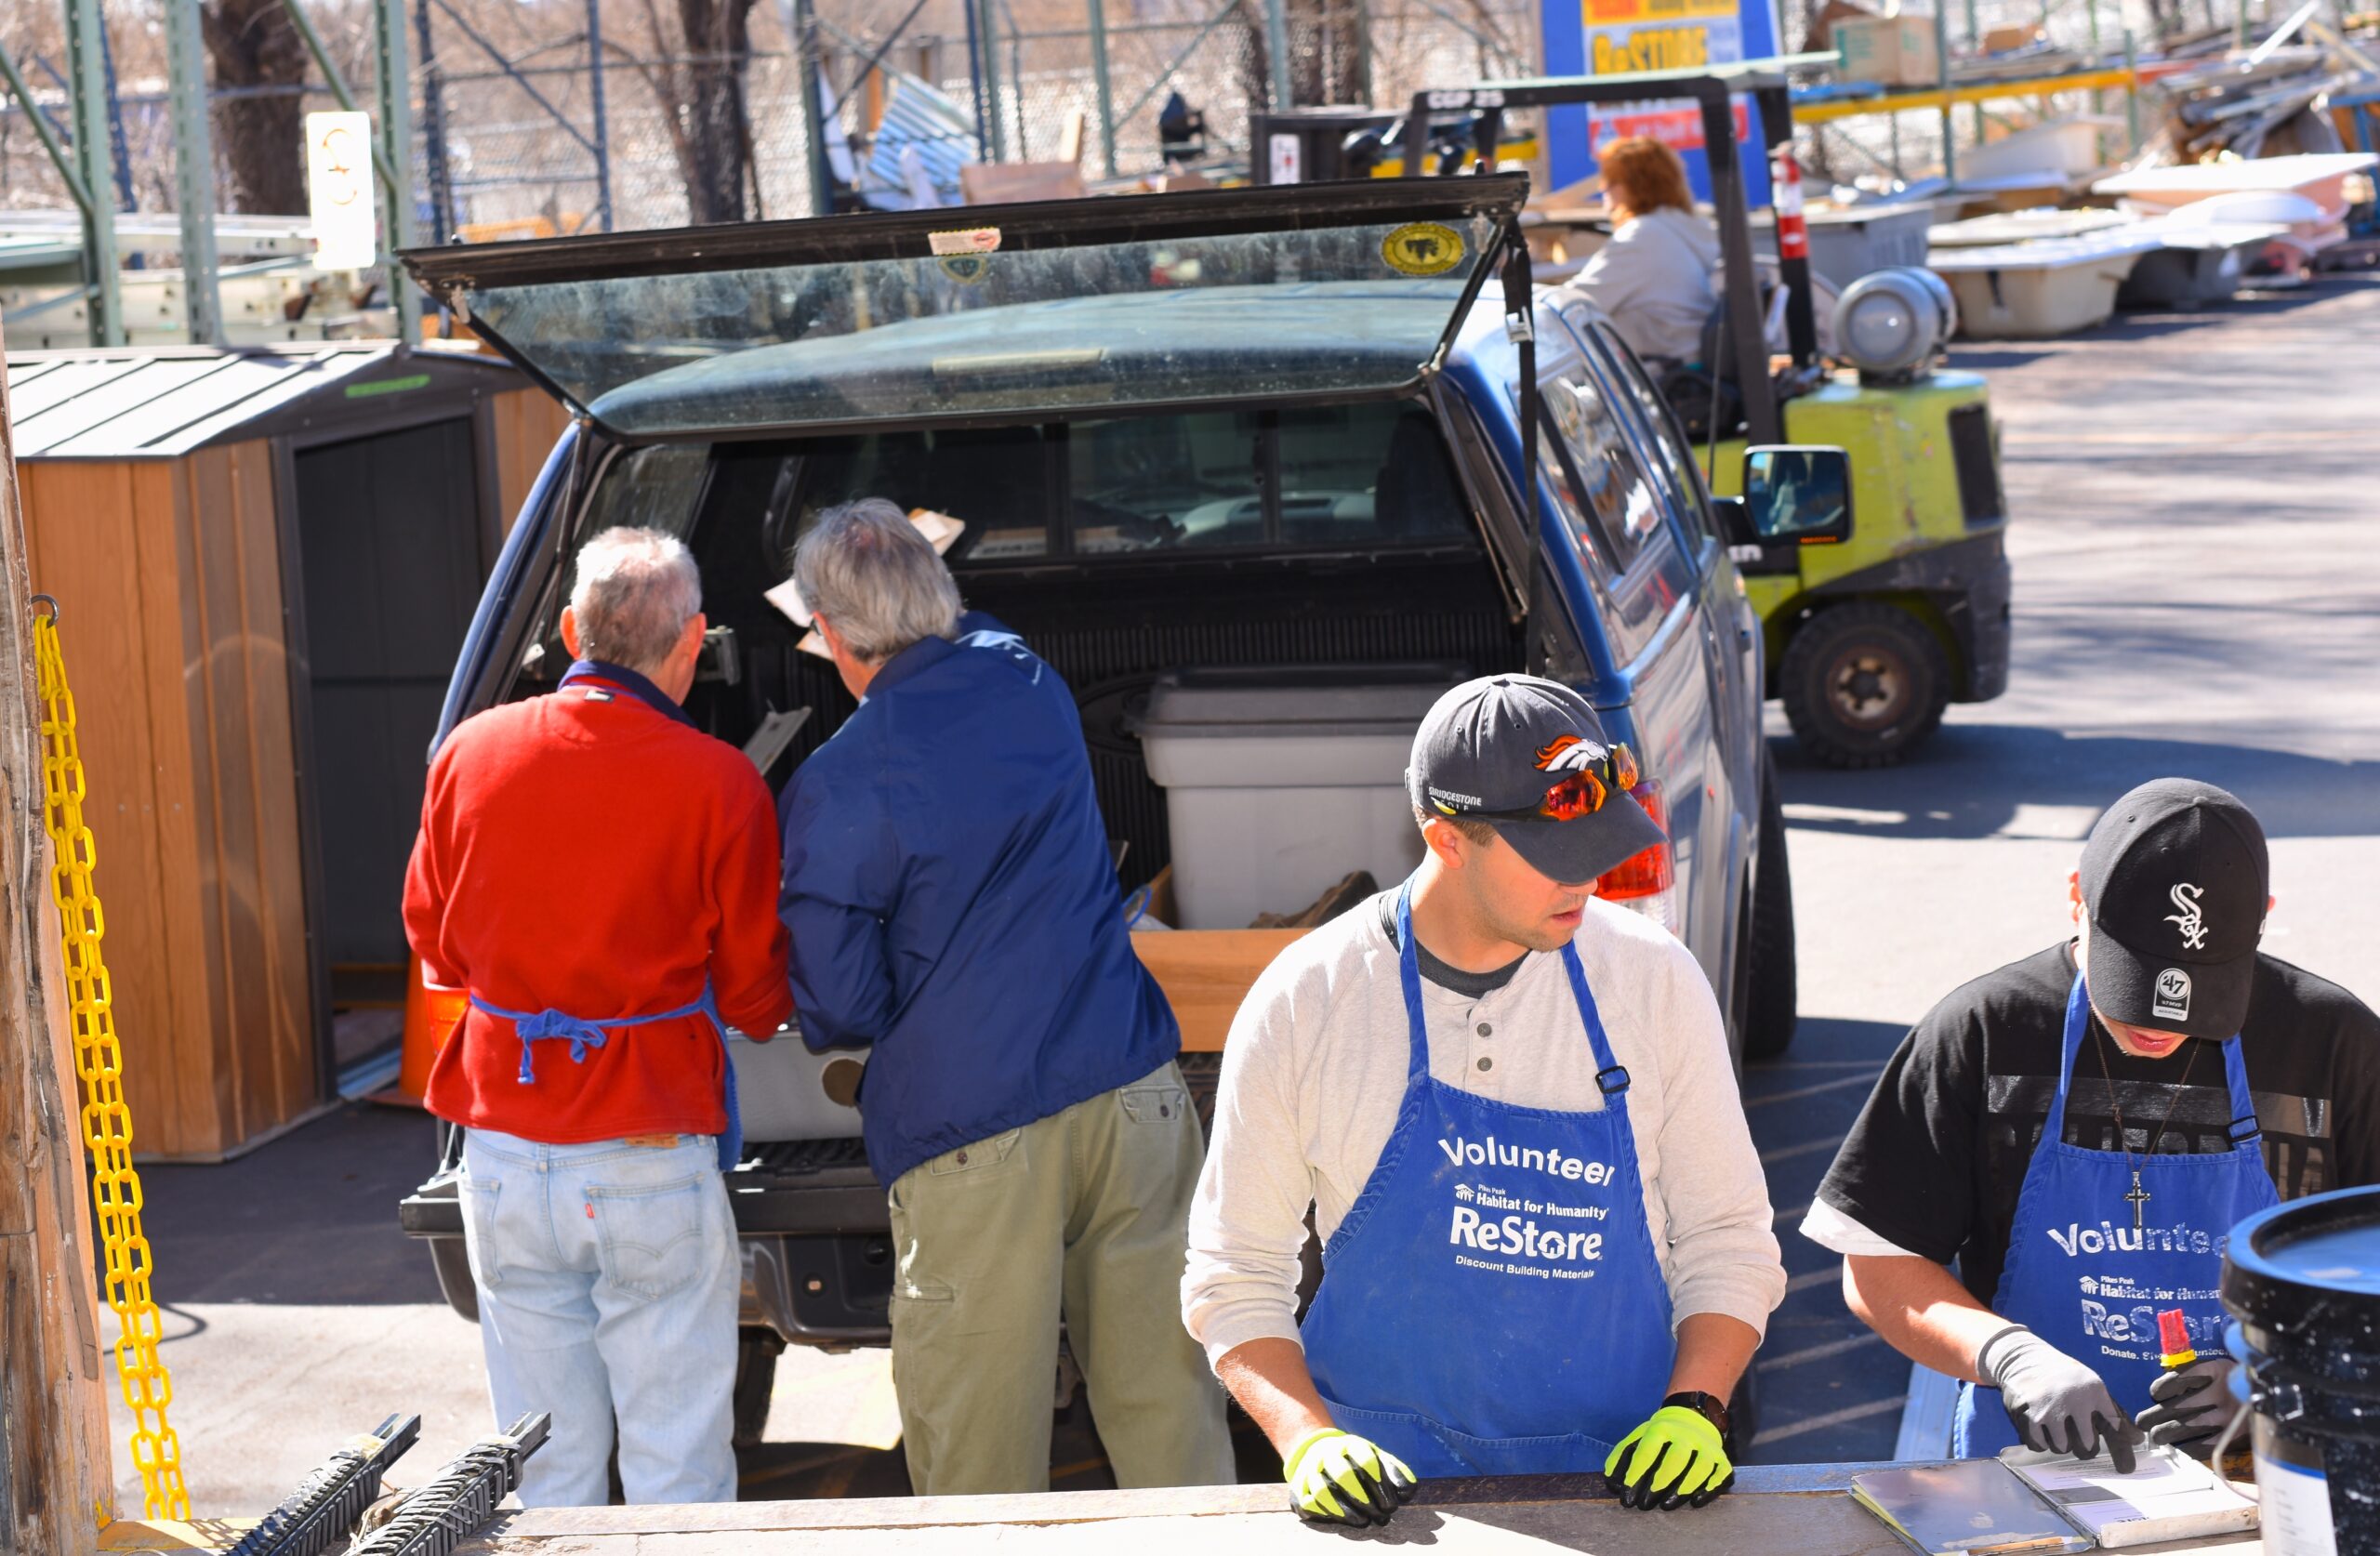 Volunteers help unload a donation